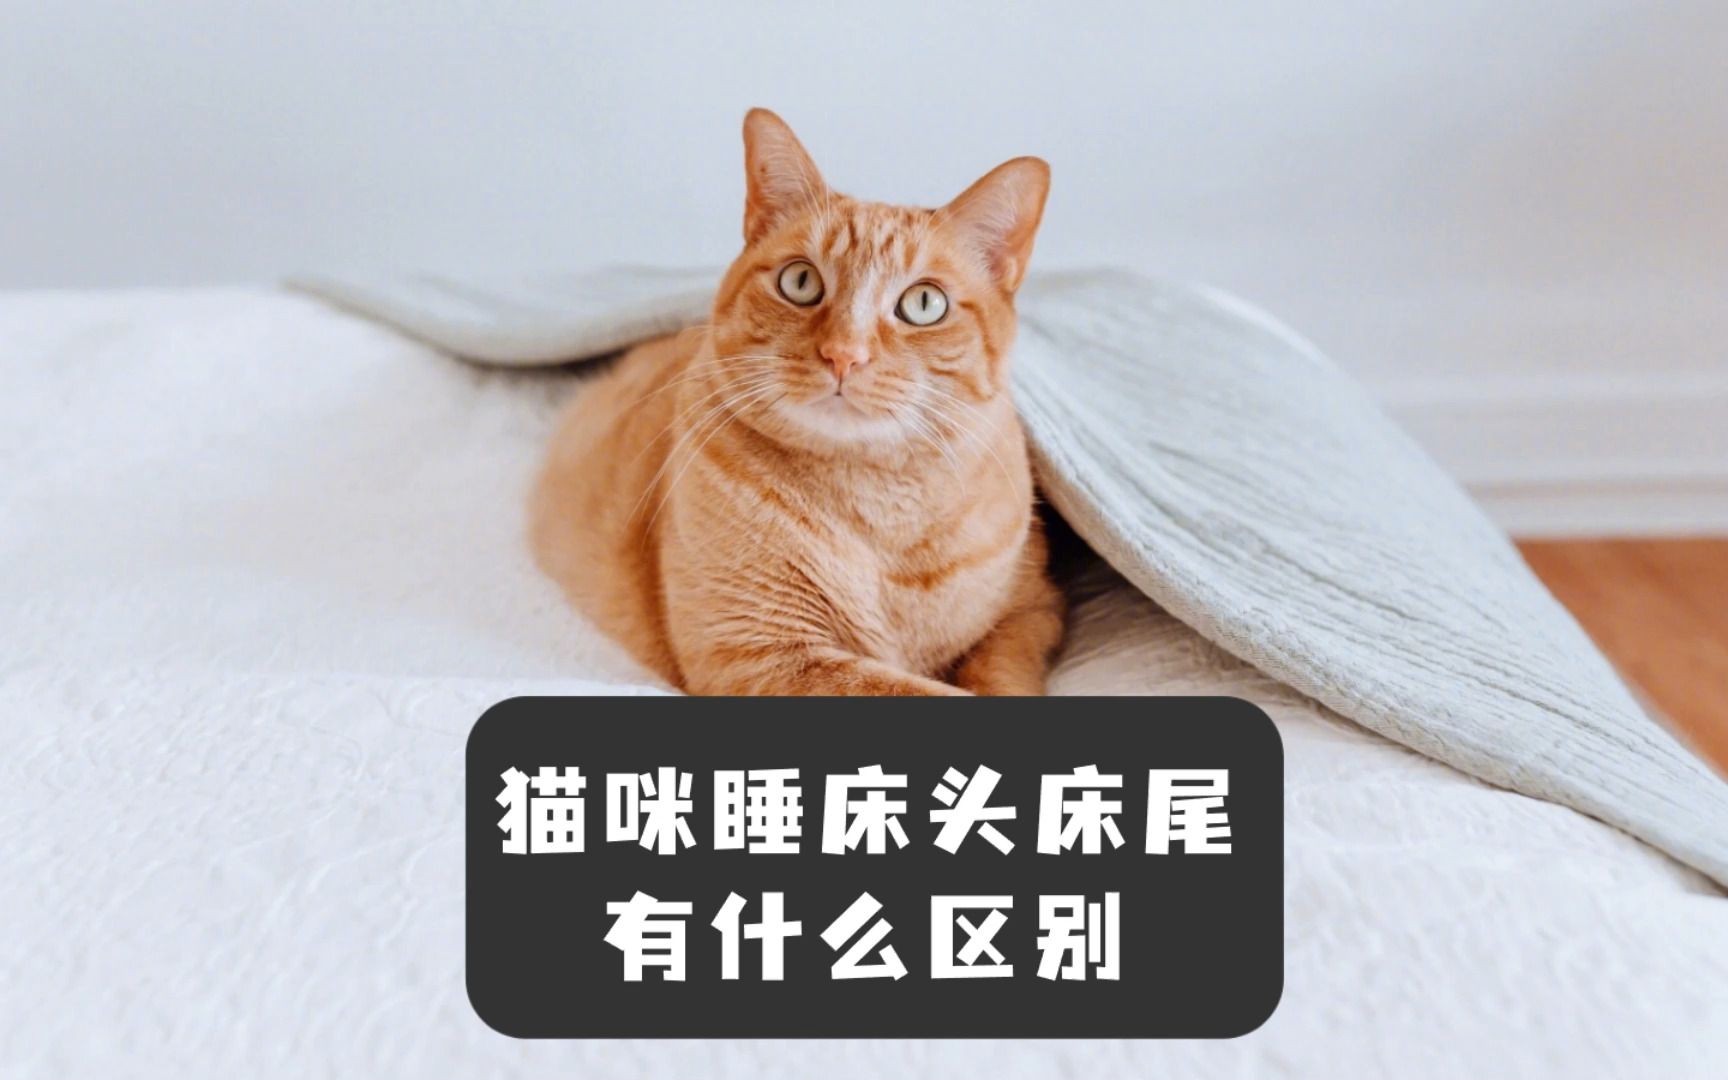 猫咪喜欢睡在床头和床尾，这个表现有什么区别吗？